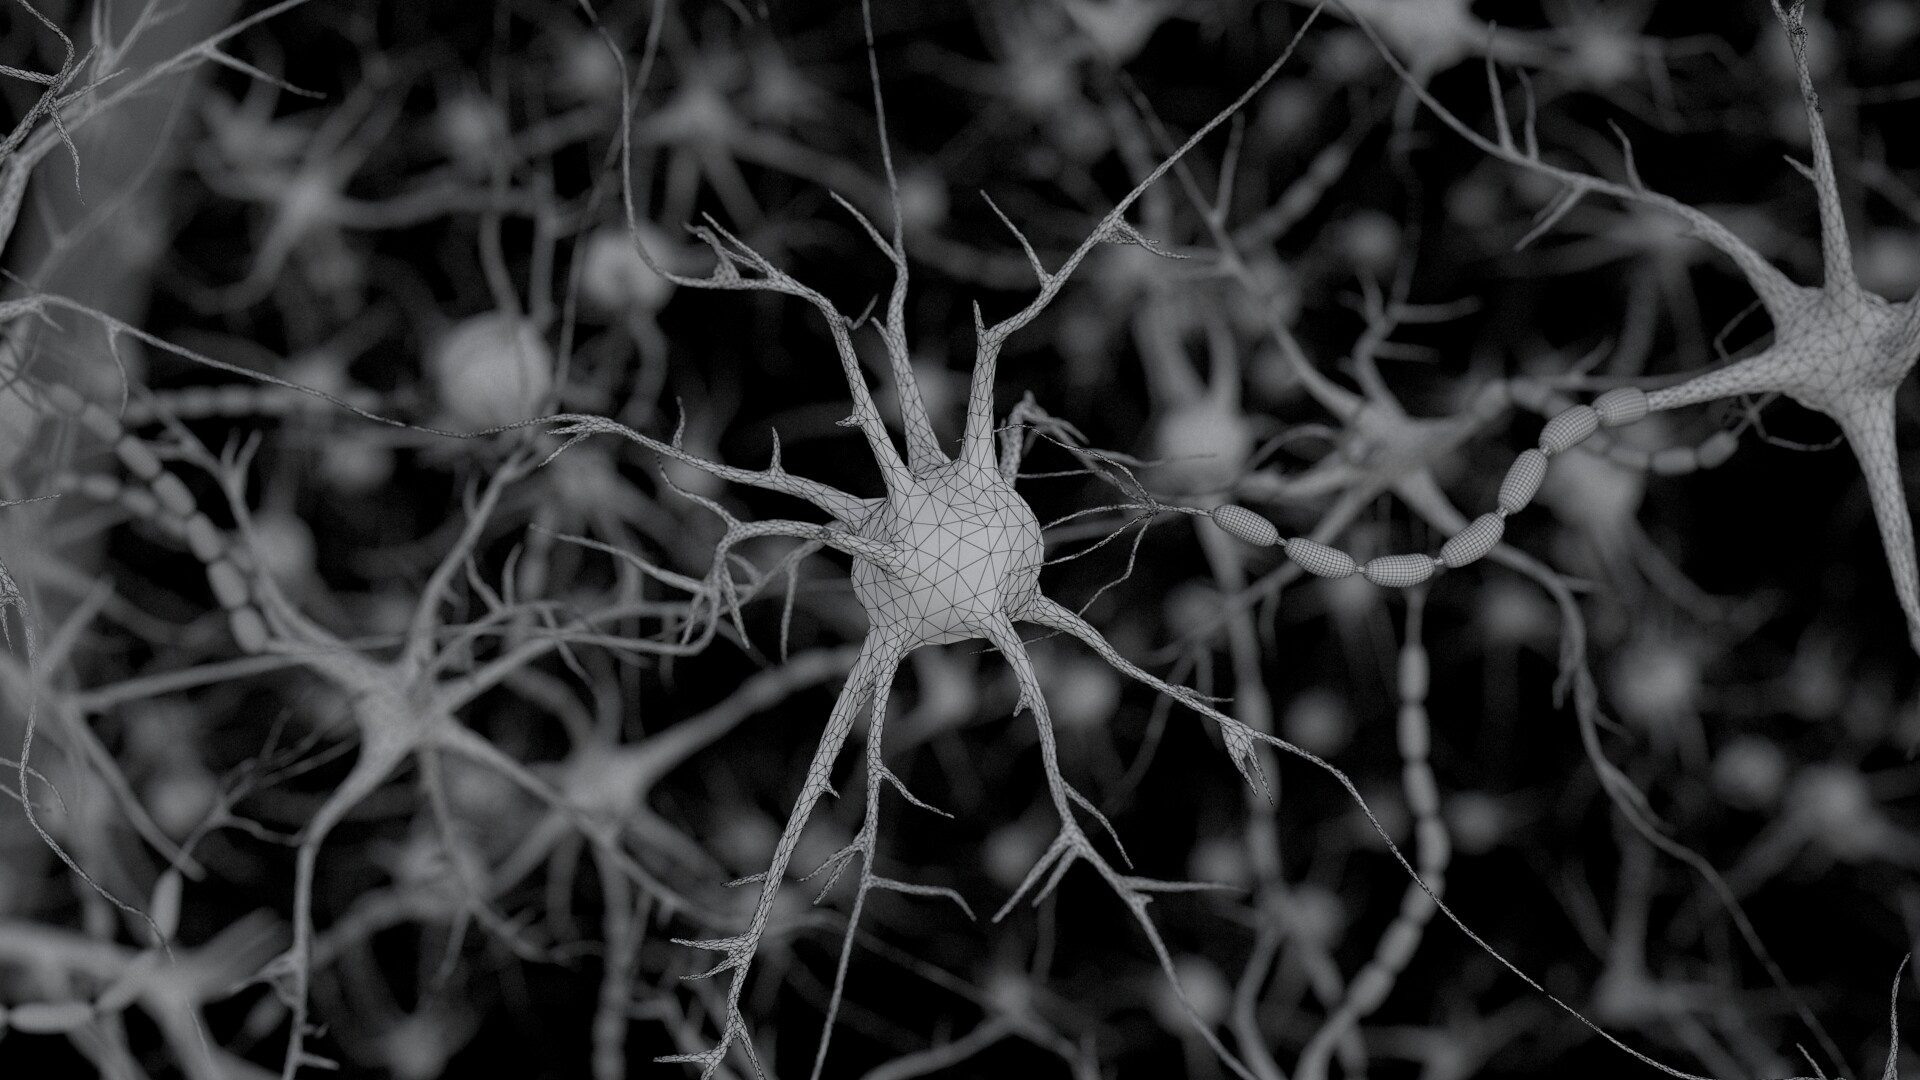 Procedural neural cells by Denis Miroshnychenko